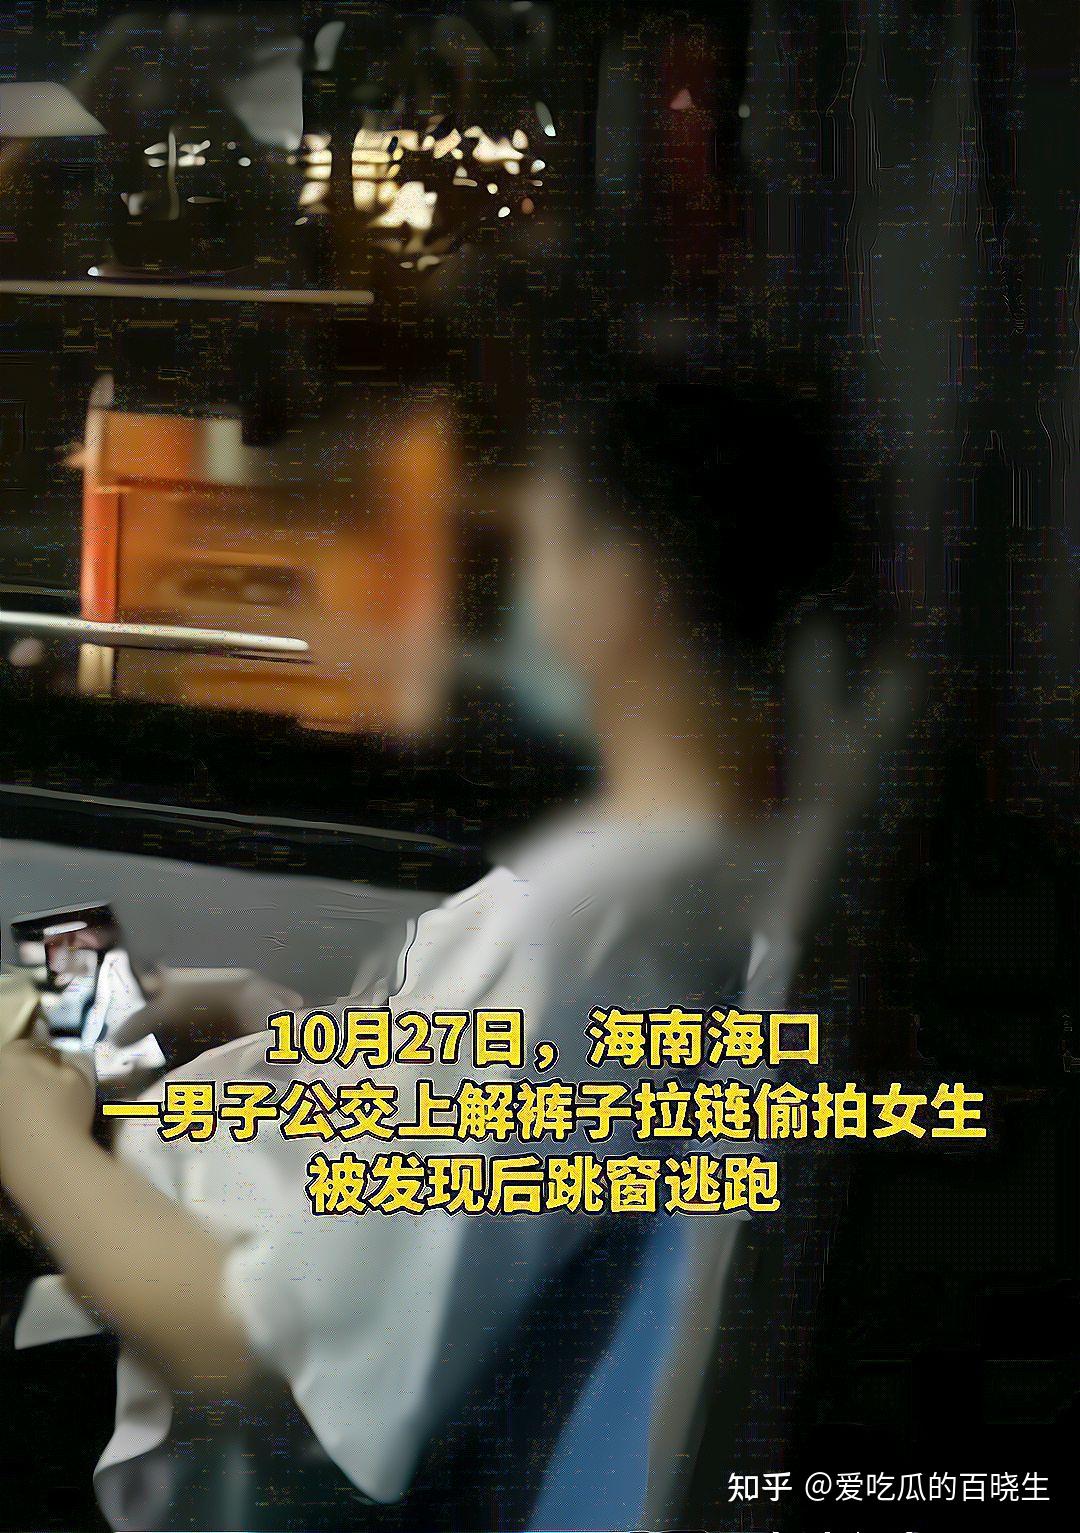 公交车里的性感肉丝高跟美少妇_中国街拍-真实街拍第一站